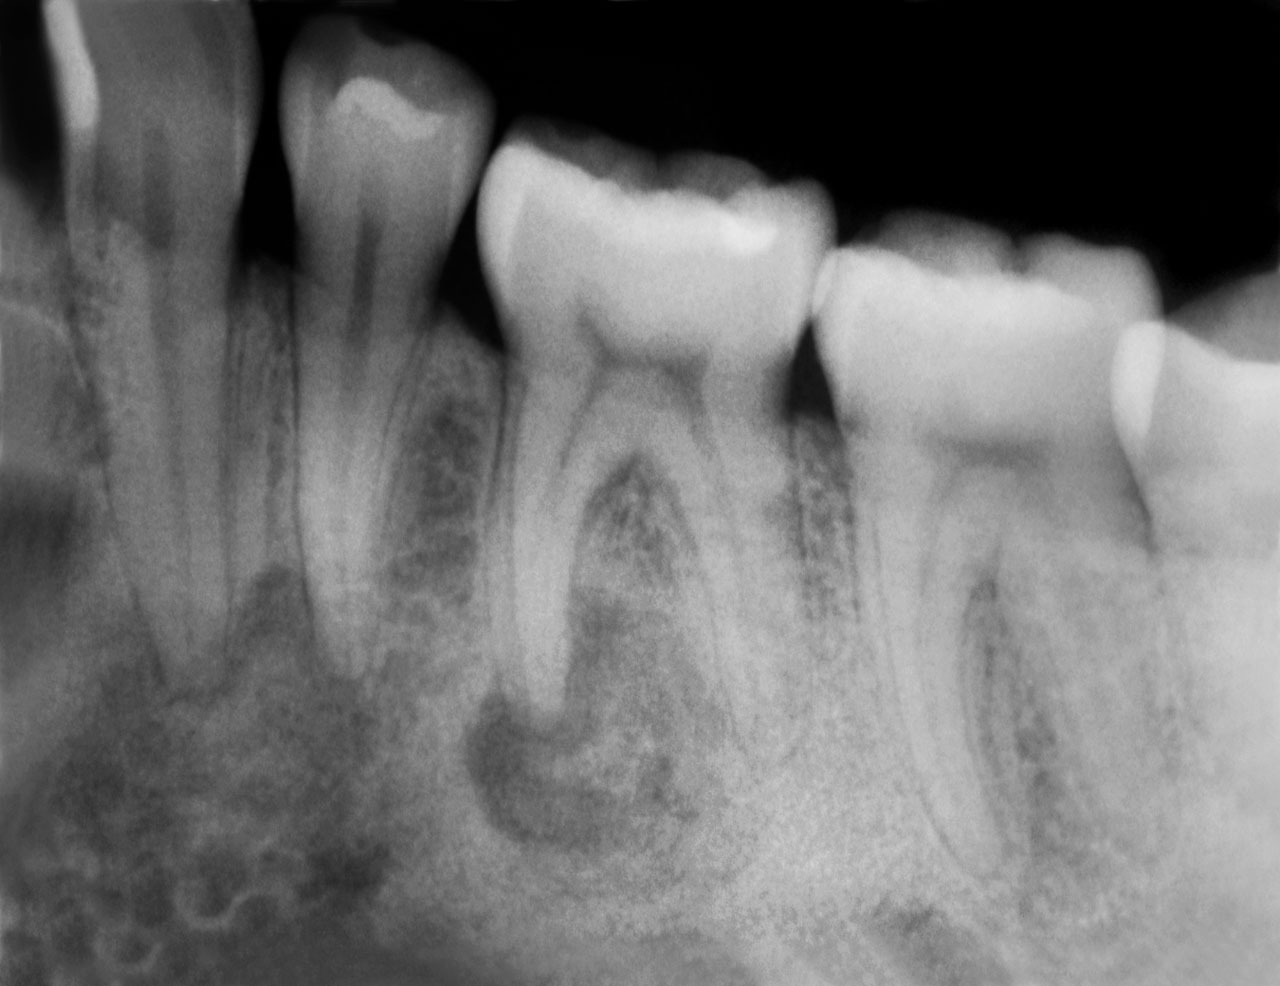 Abb. 3 Einzelzahnaufnahme von Zahn 36 (02/2019): die mesiale Wurzel zeigt eine Aufhellung, während die distale Wurzel periapikal bereits komplett von hyperdensen Strukturen umgeben ist – bei vollständig durchgängigem PA-Spalt.